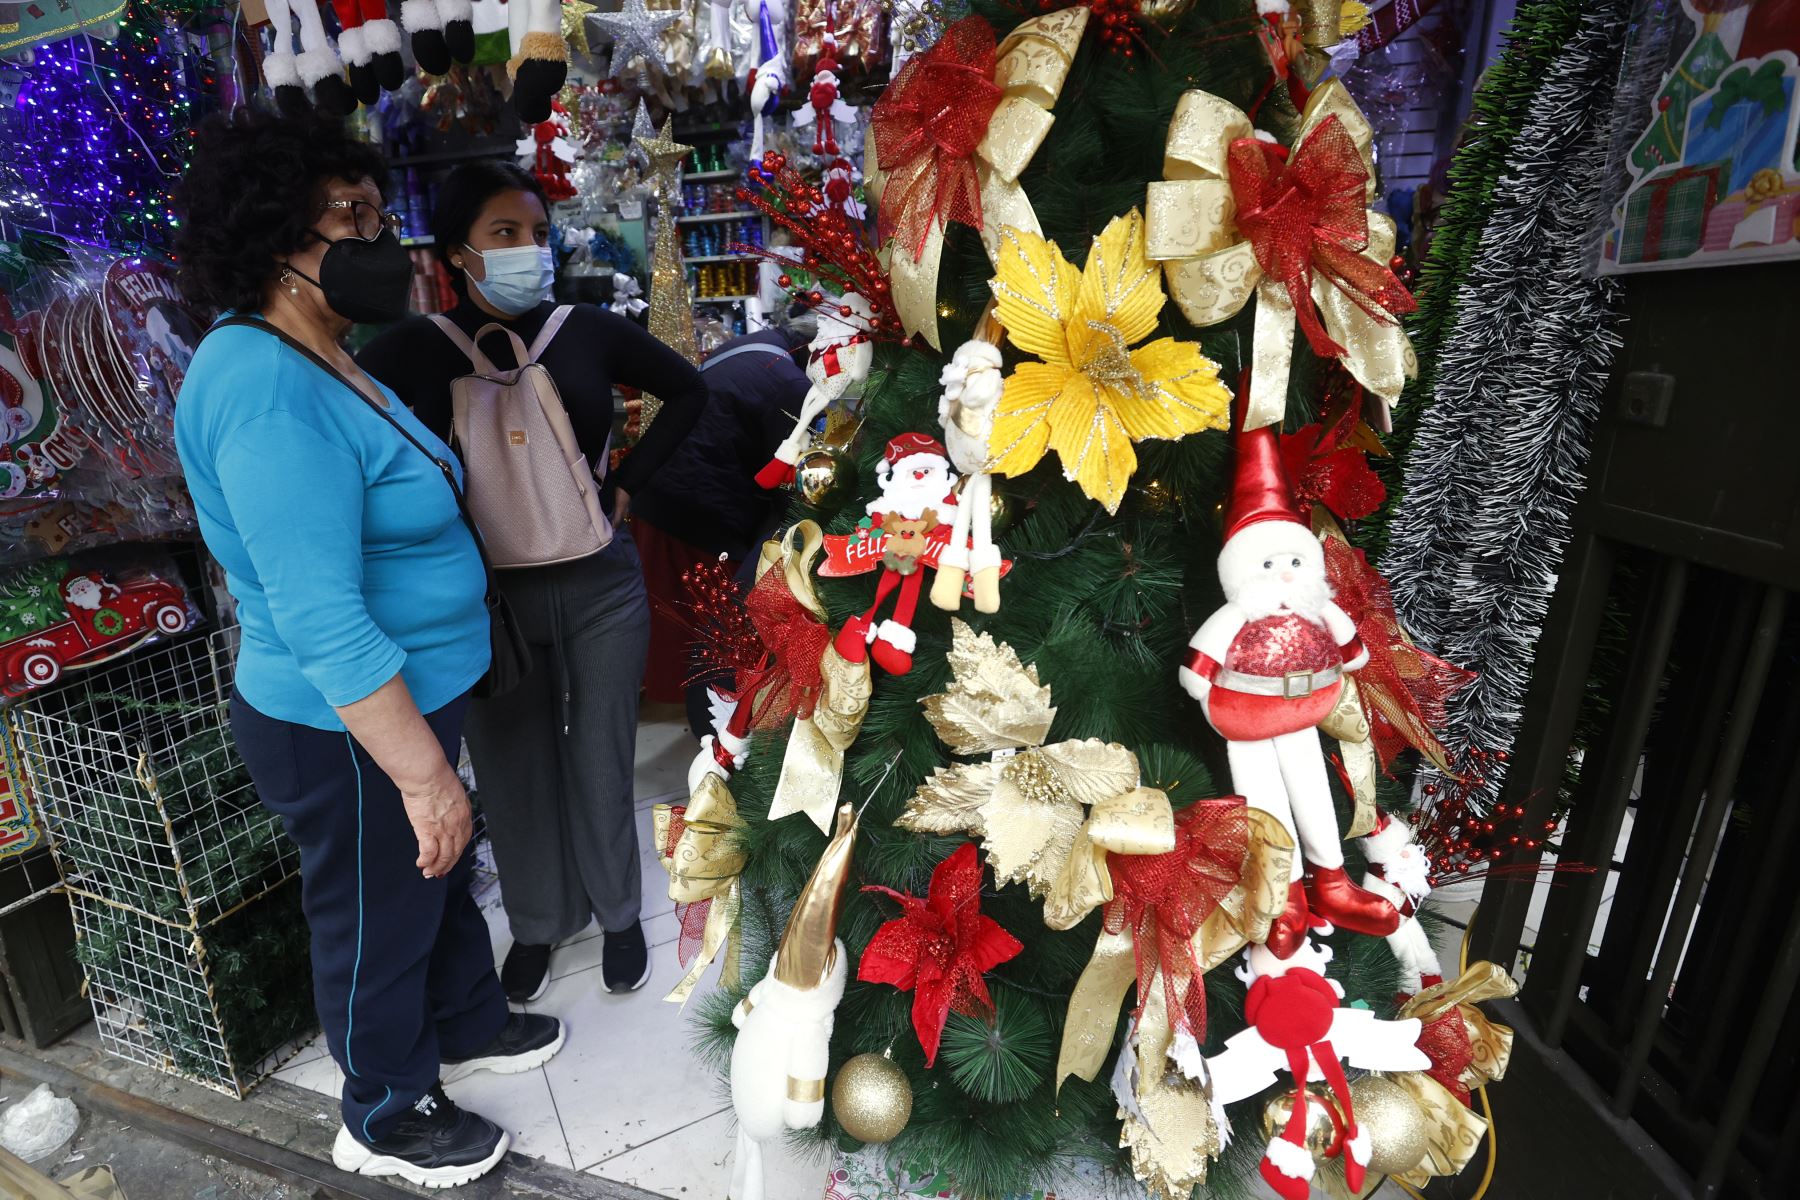 Se incrementa la venta de artículos navideños en Mesa Redonda, personas buscan tener las mejores ofertas en los artículos de decoración navideña. Foto: ANDINA/Vidal Tarqui